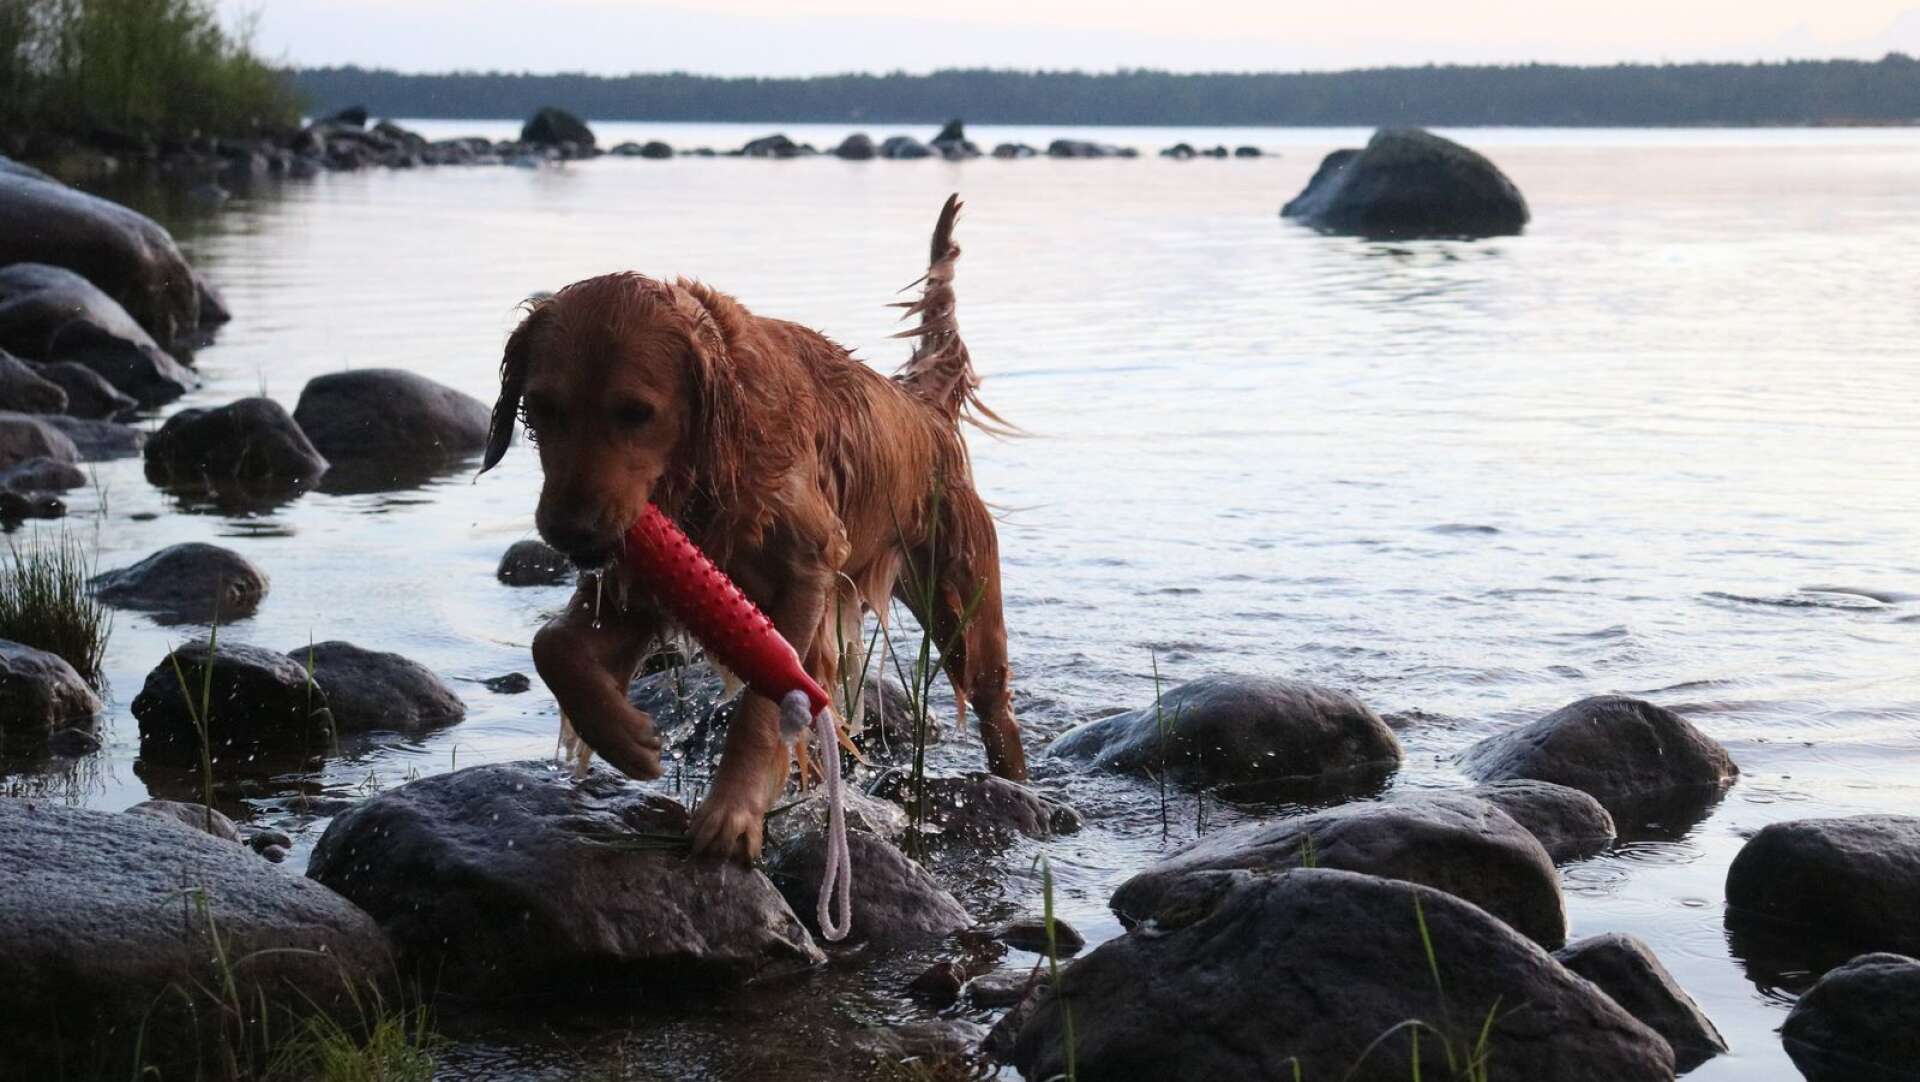 Semestra med hund. I Värnanäs i Kristinehamns yttre skärgård kan hunden ta ett dopp. Golden retrievern Ziri badar mer än gärna.